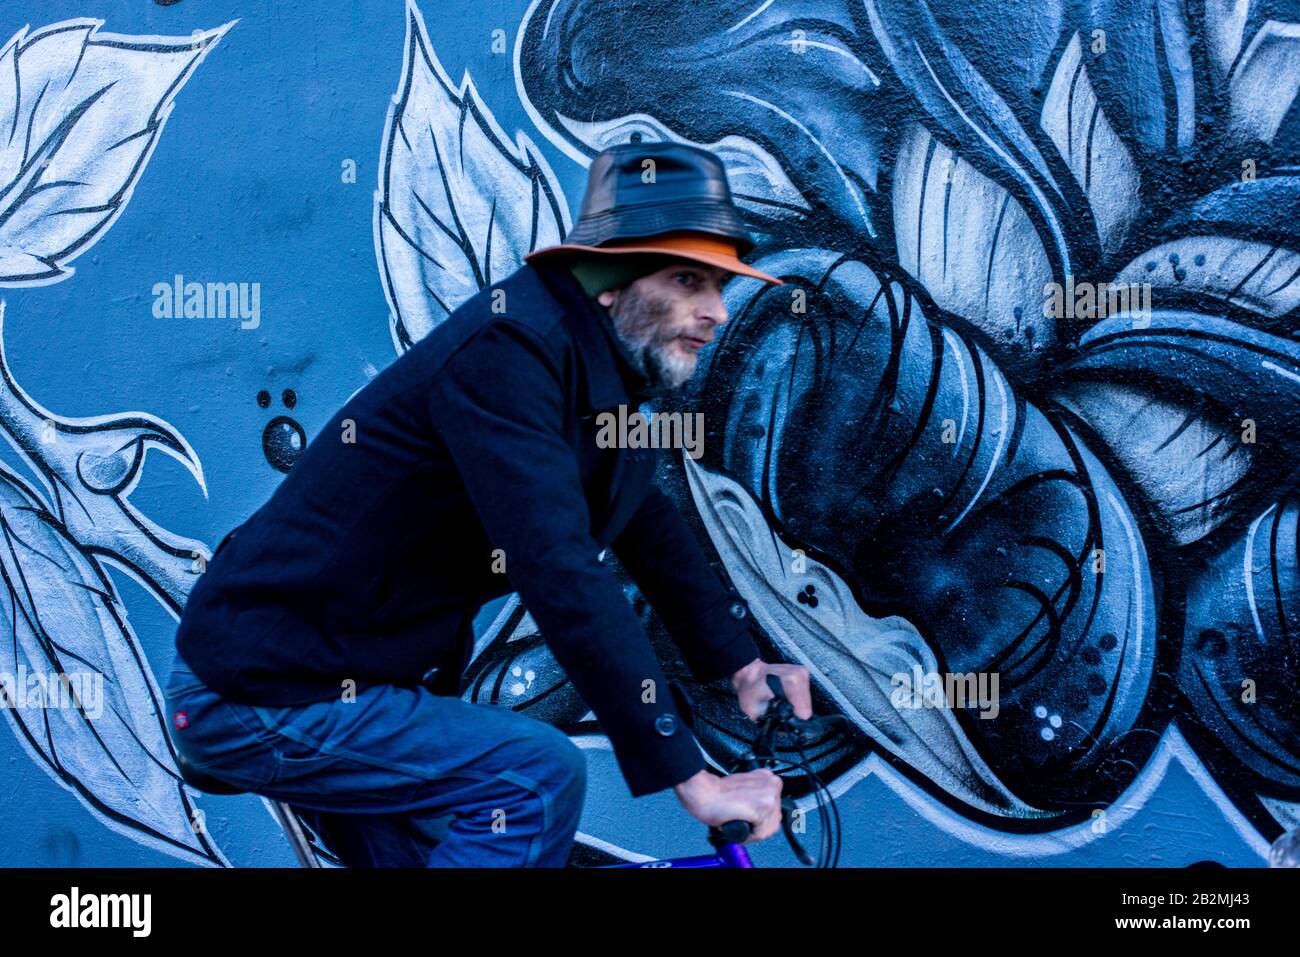 Un uomo vestito di cicli blu passa davanti a un pezzo di arte graffiti con motivi floreali blu mentre indossa due cappelli uno sopra l'altro. Foto Stock